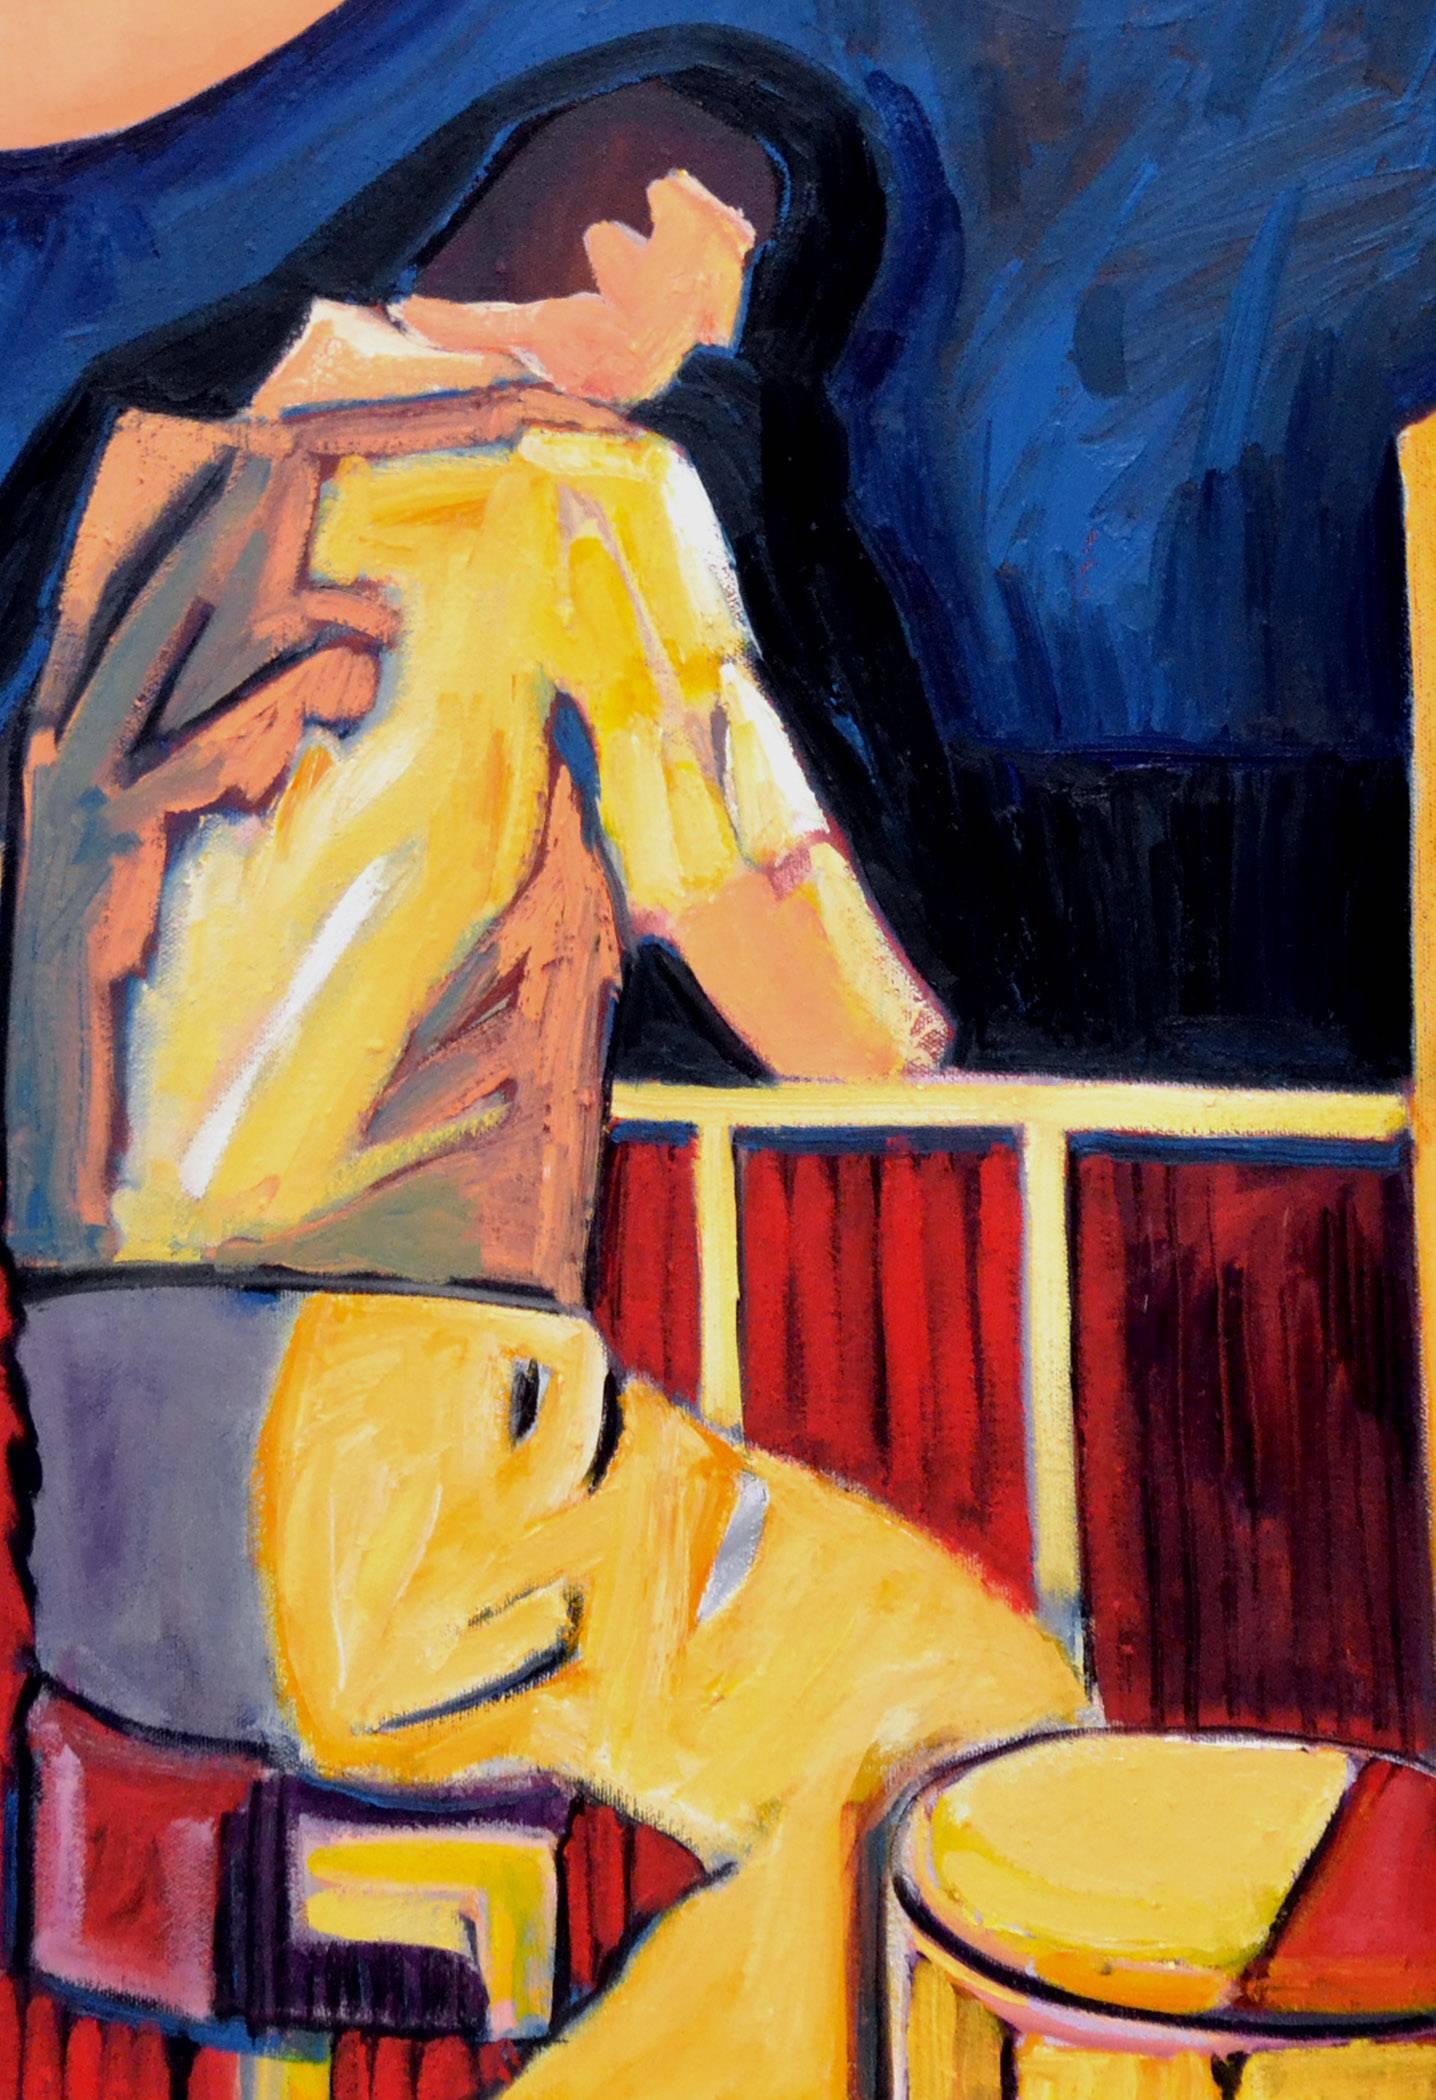 Man an der Klavierbar, zeitgenössische figurative Figuration mit Primärfarben – Painting von Michael William Eggleston